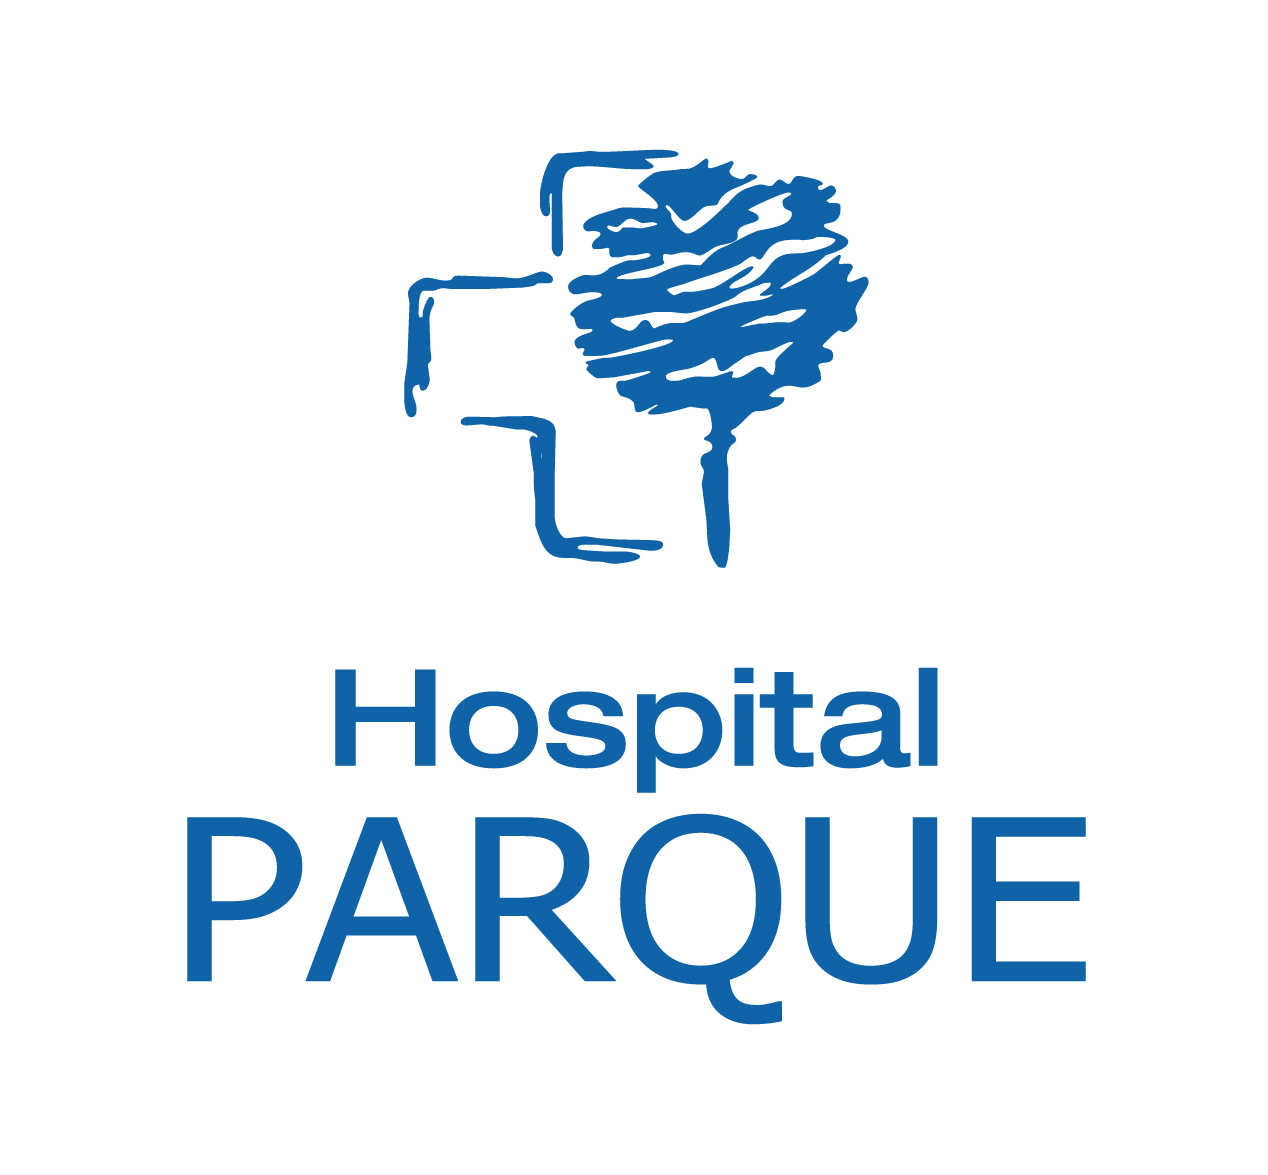 Logotipo de la clínica HOSPITAL PARQUE FUERTEVENTURA